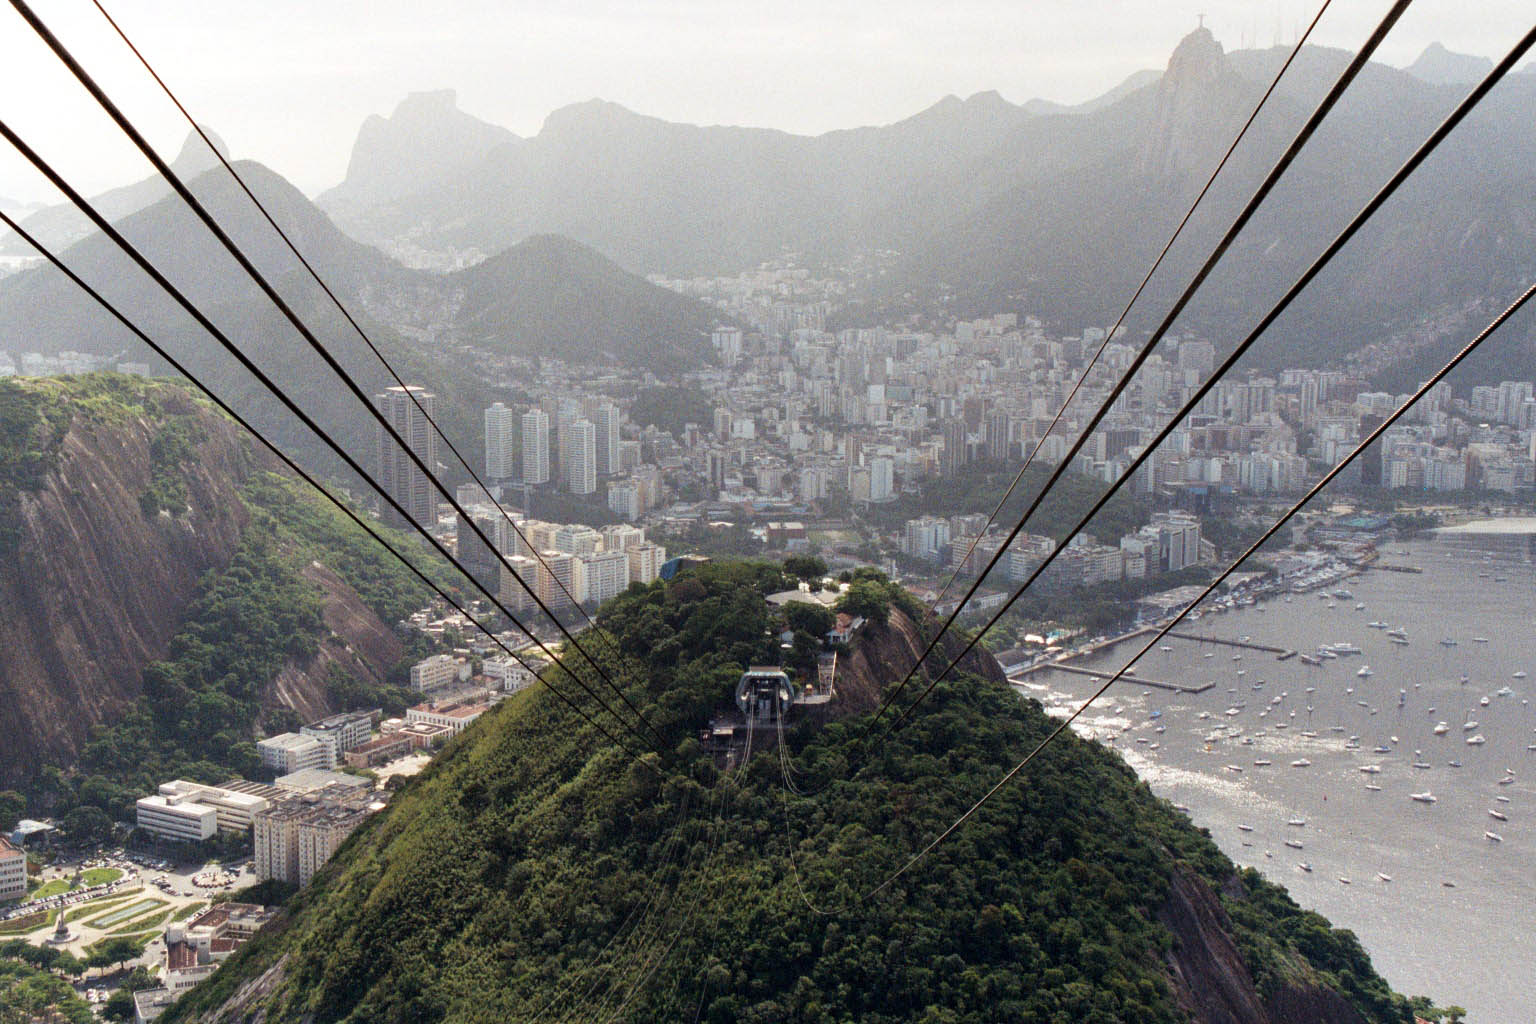 Rio de Janeiro as seen from Sugar Loaf